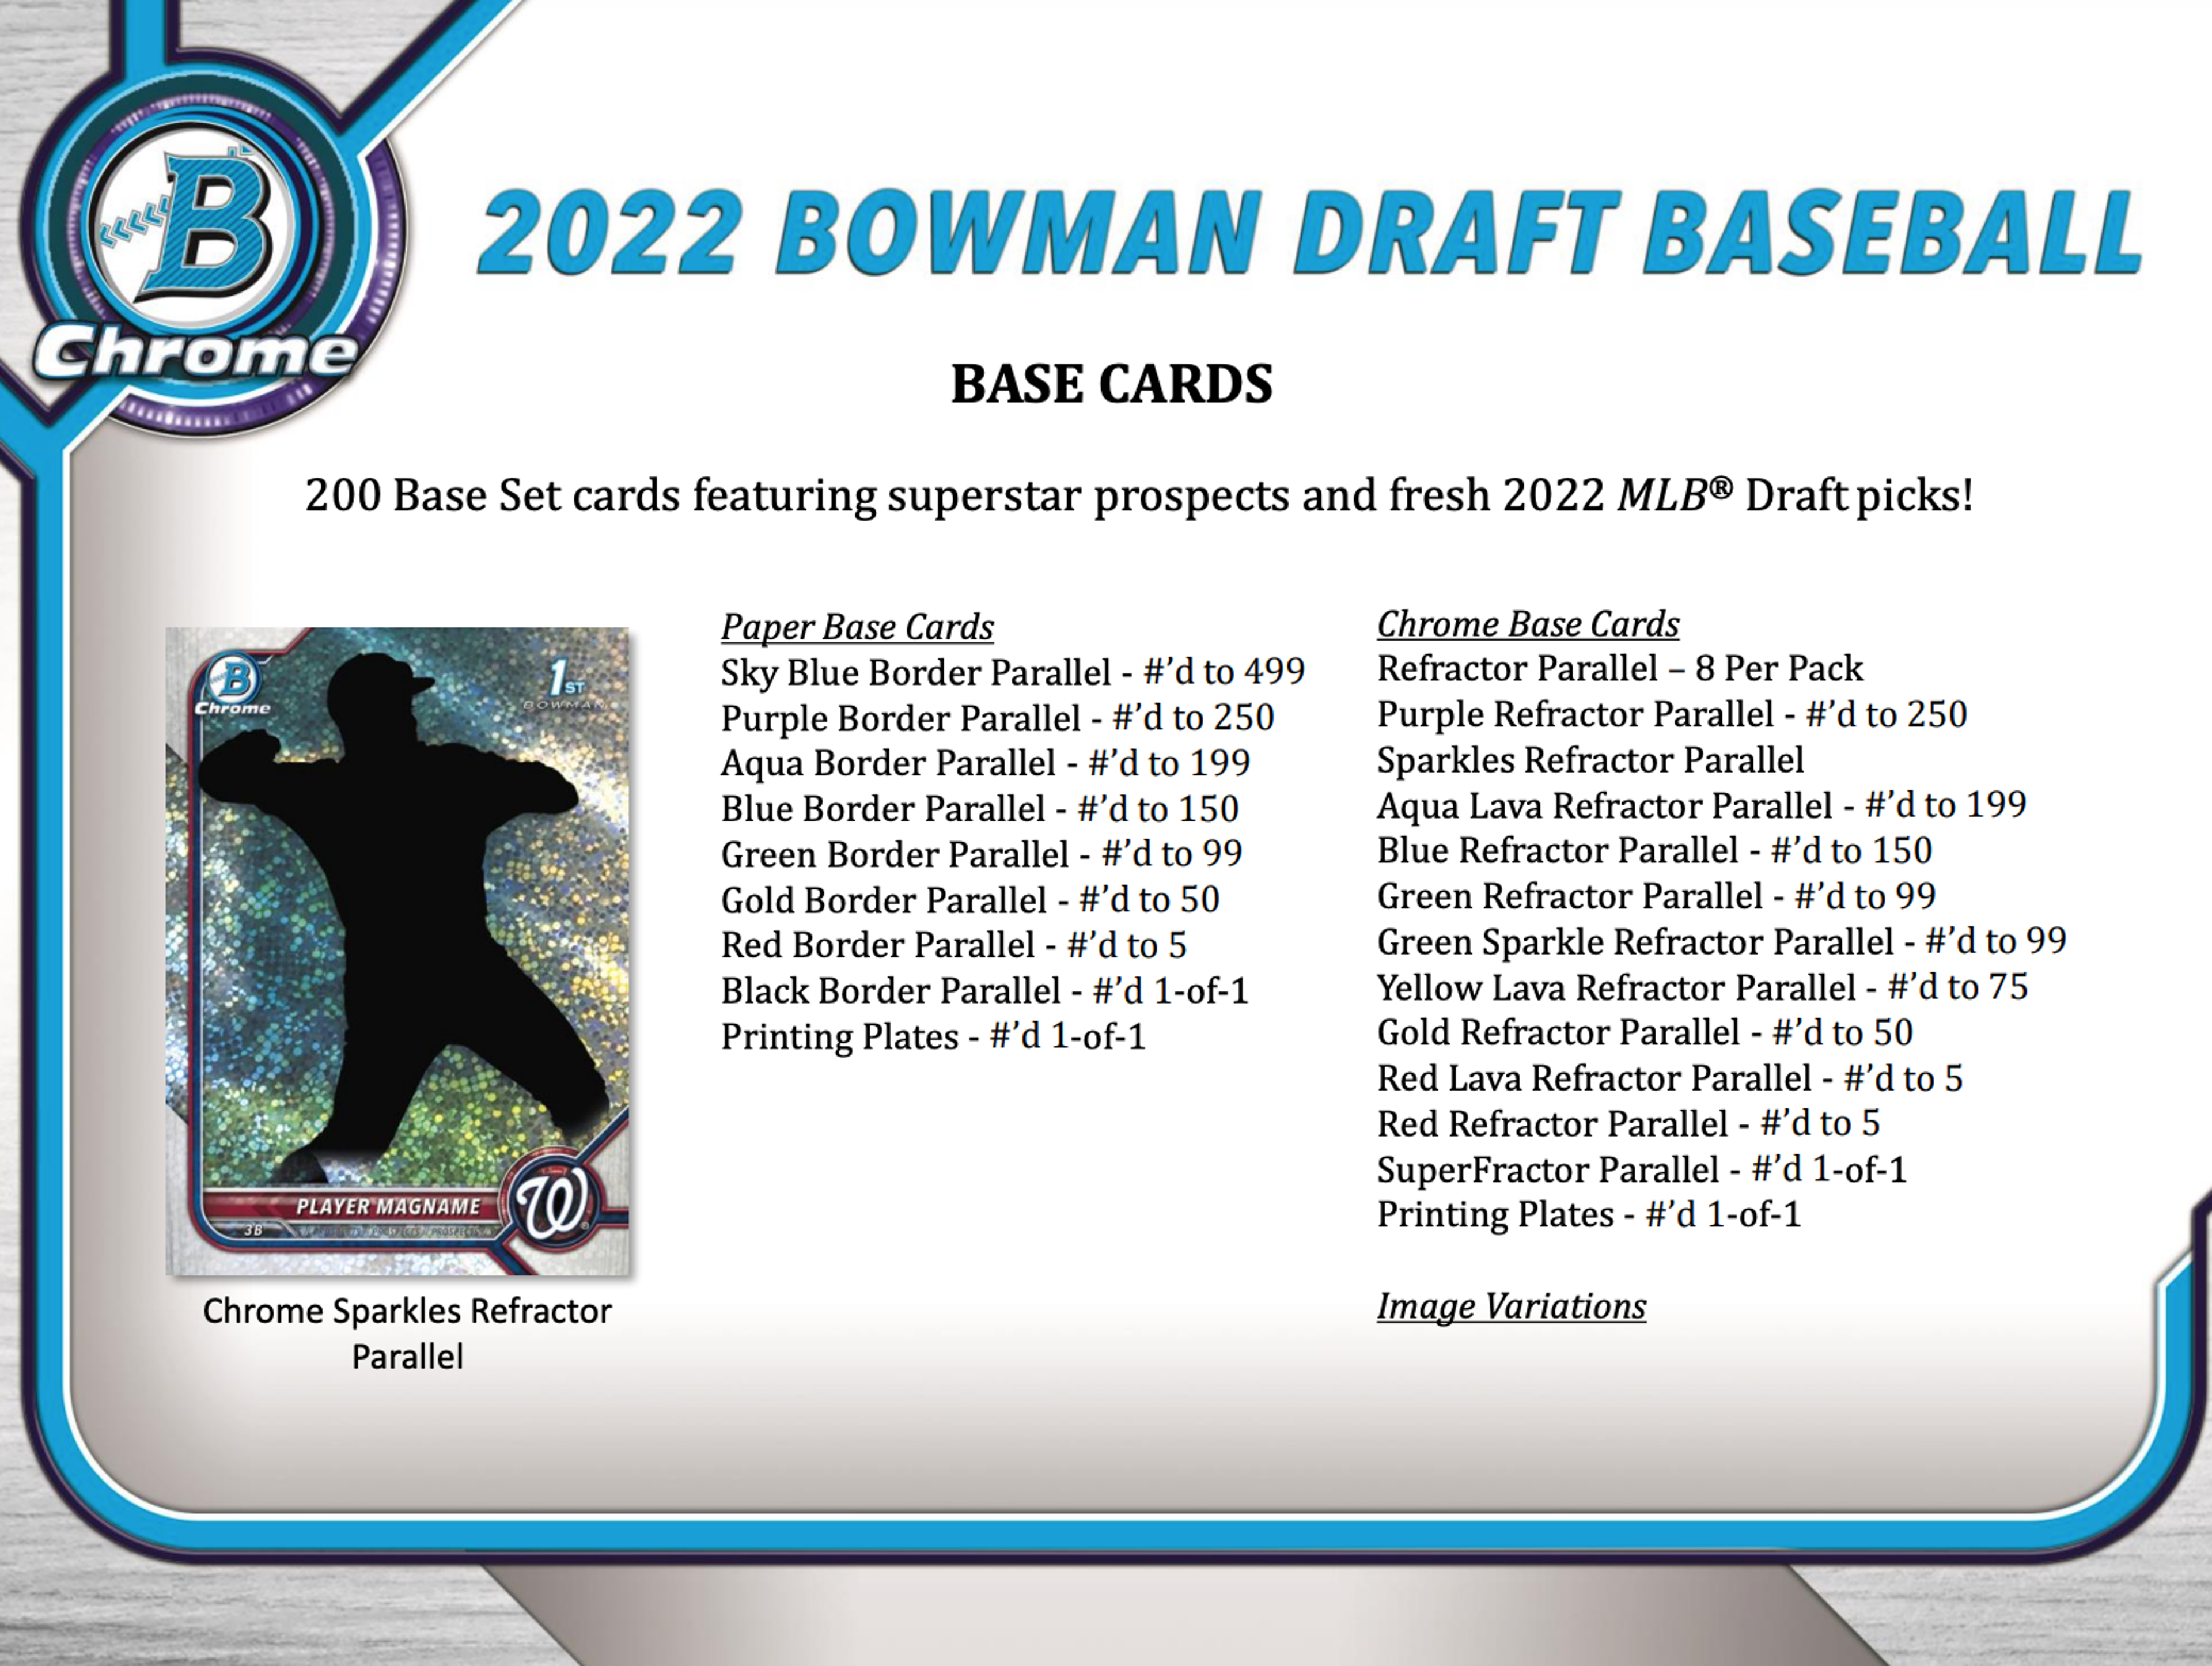 Alternate View 2 of 2022 Bowman Draft Baseball Hobby Jumbo Pack